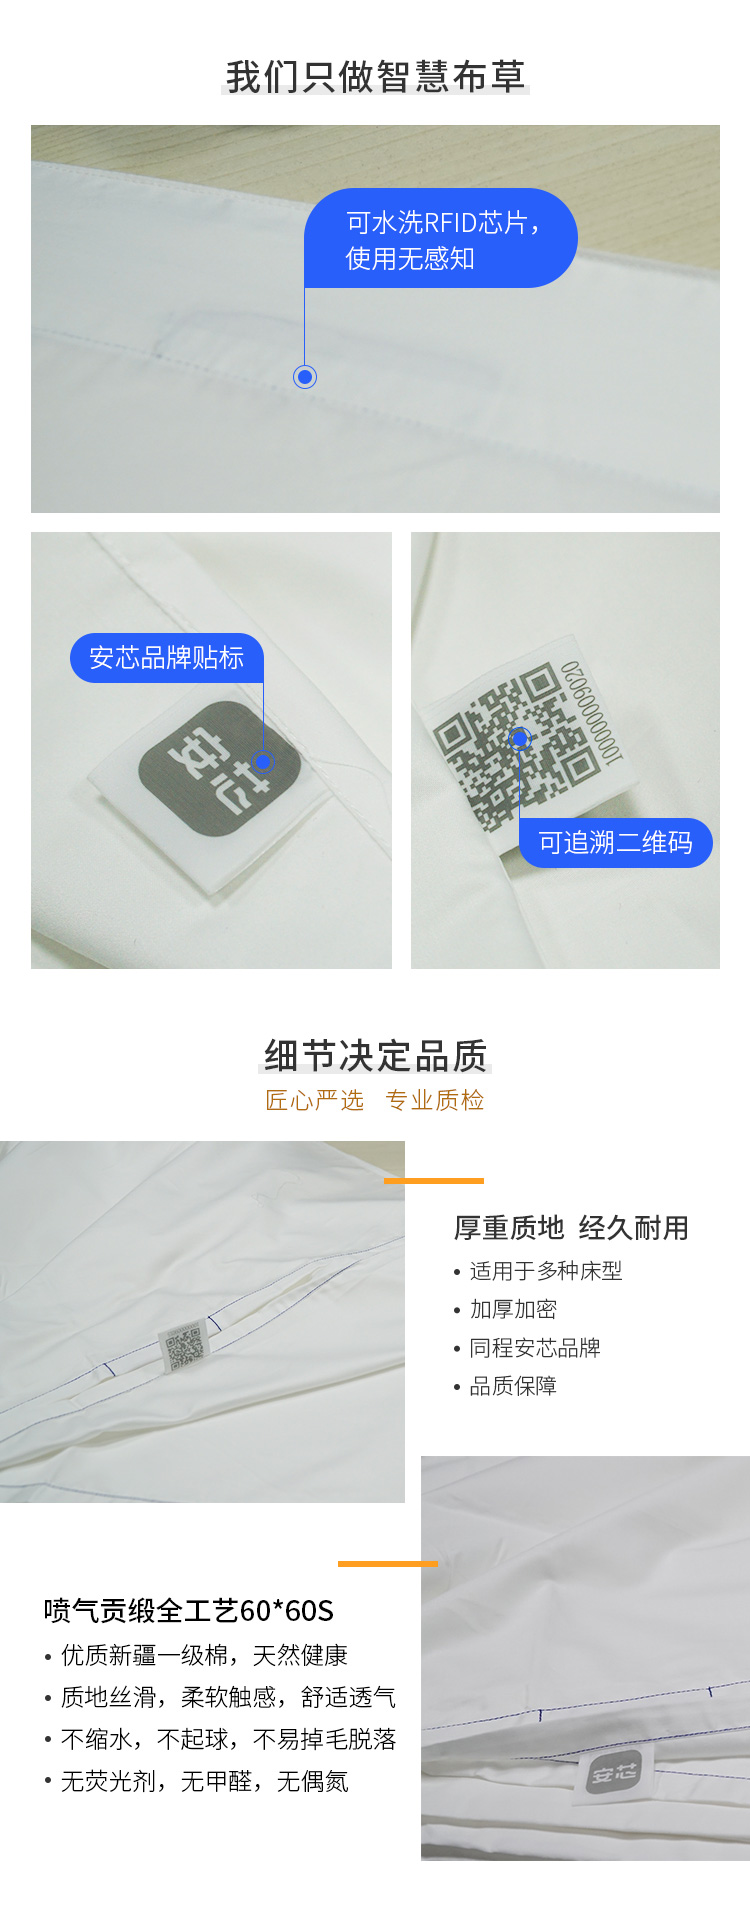 安芯微店产品-床单6060_02.jpg